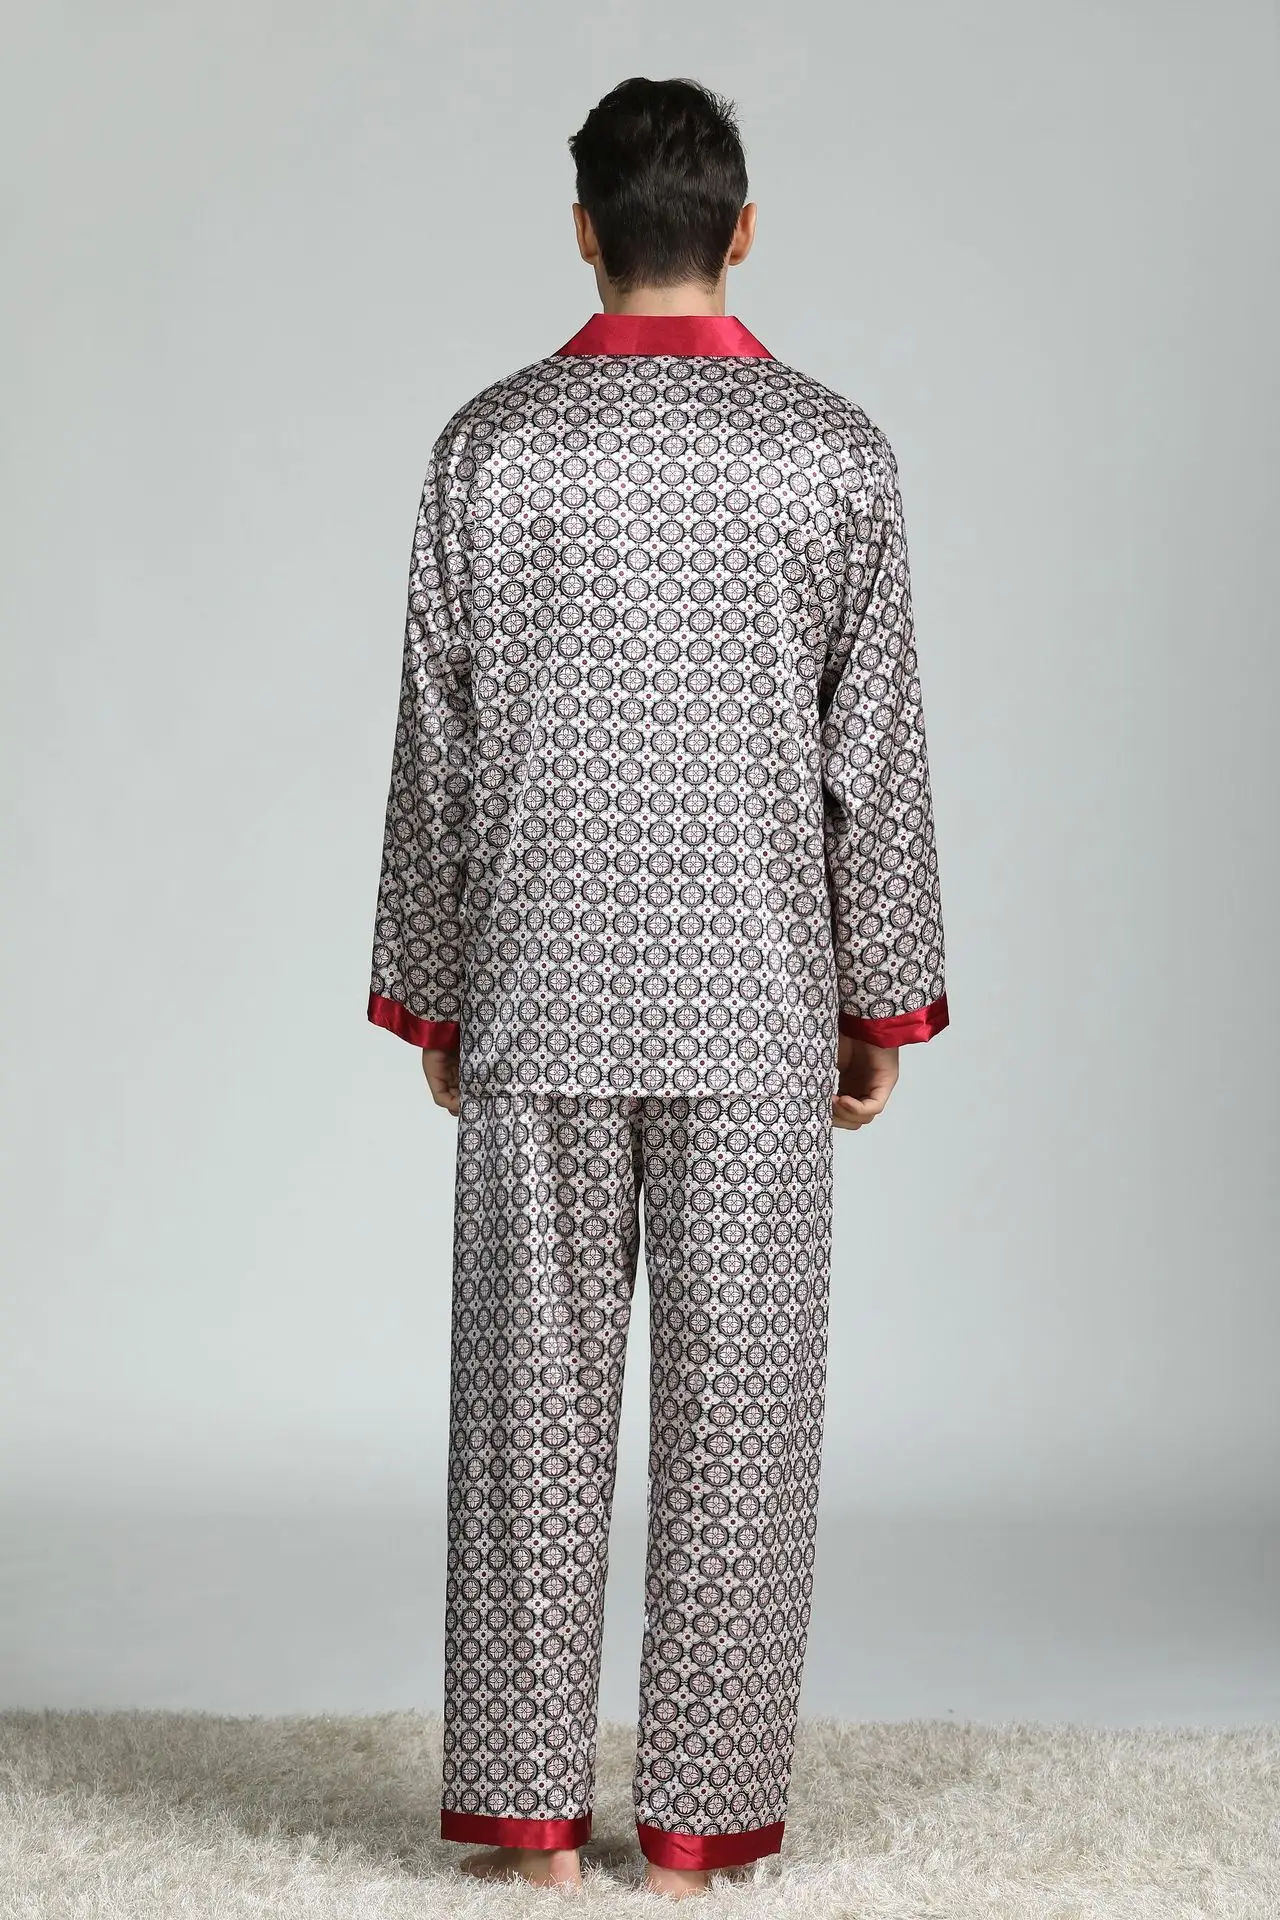 Пижама Мужская пижама имитация шелка Пижама для мужчин пижама Сексуальная Уютная Мягкая ночная рубашка с длинным рукавом Топы Брюки Комплект из двух предметов